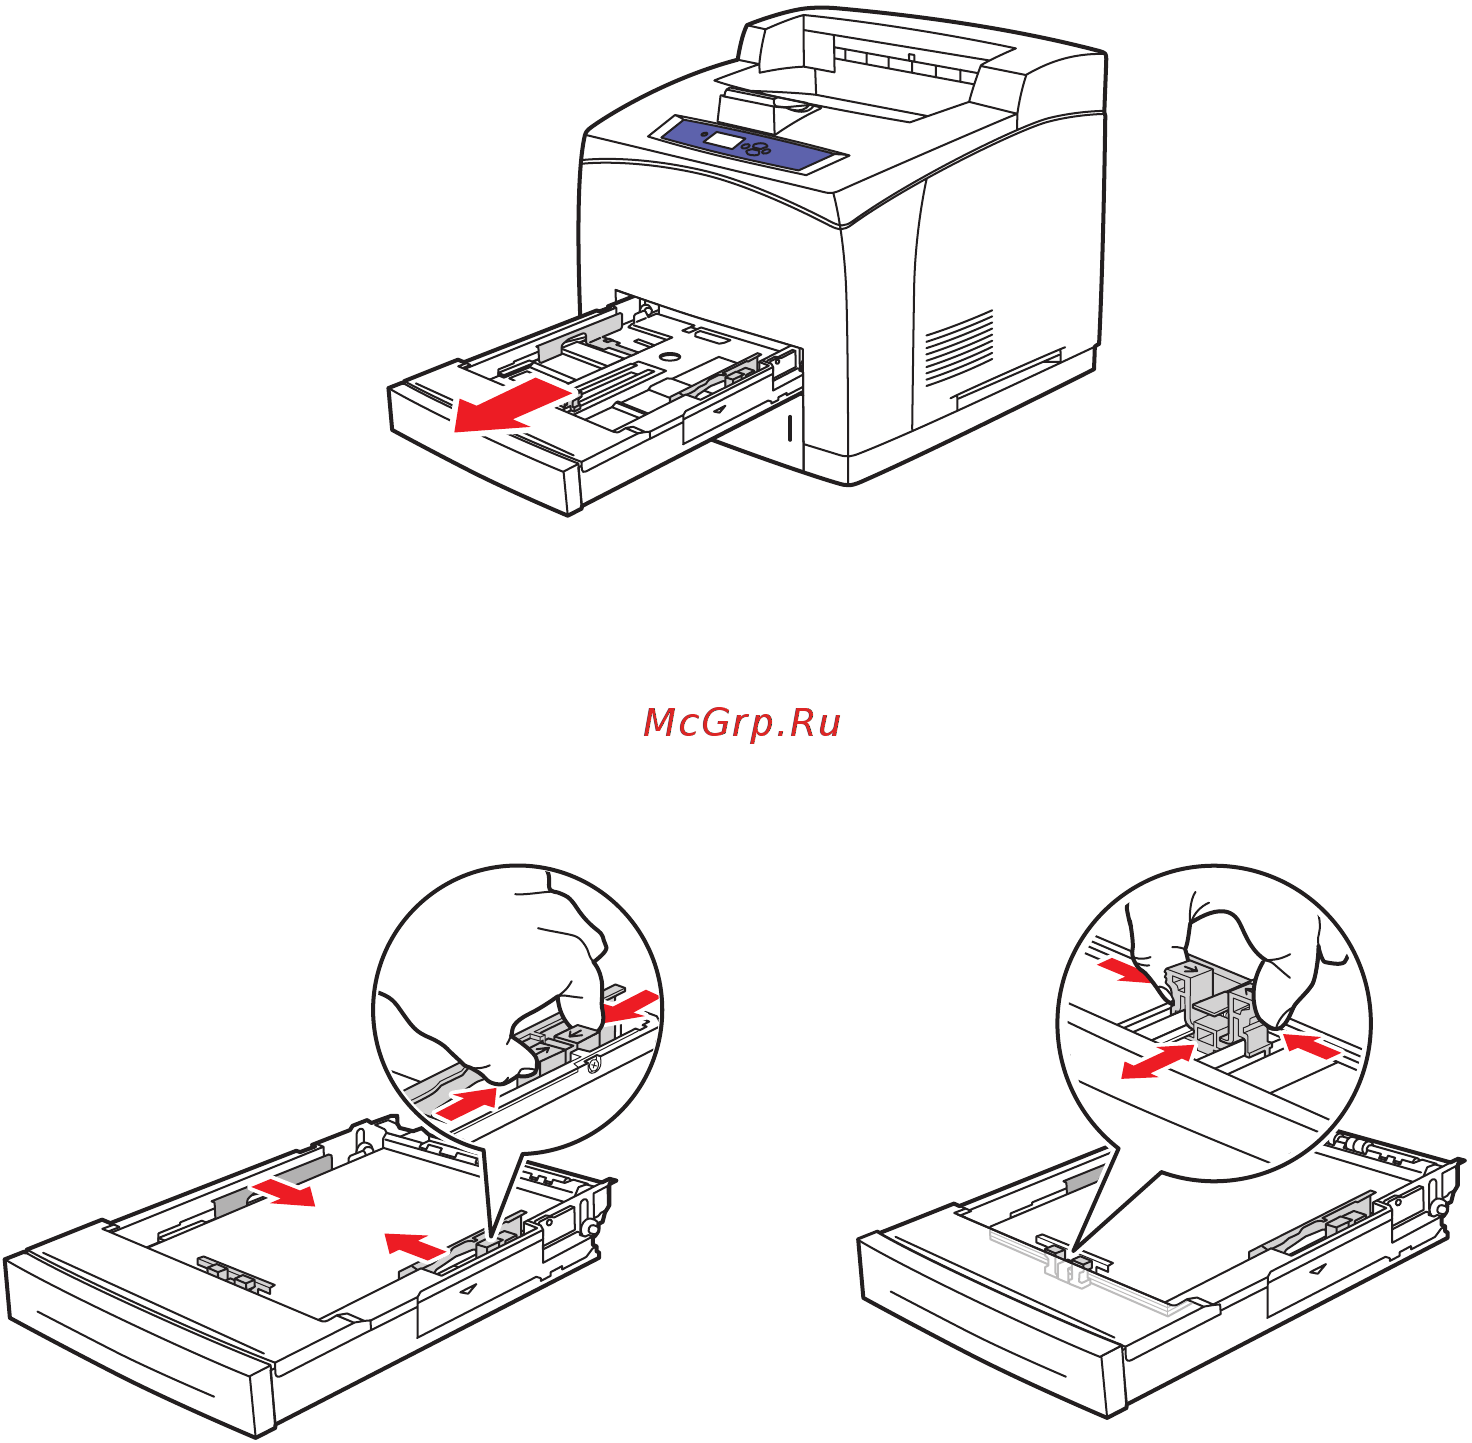 Как вставить бумагу в принтер? как правильно вставлять в лазерный или в струйный принтер? как загружать для двусторонней печати?